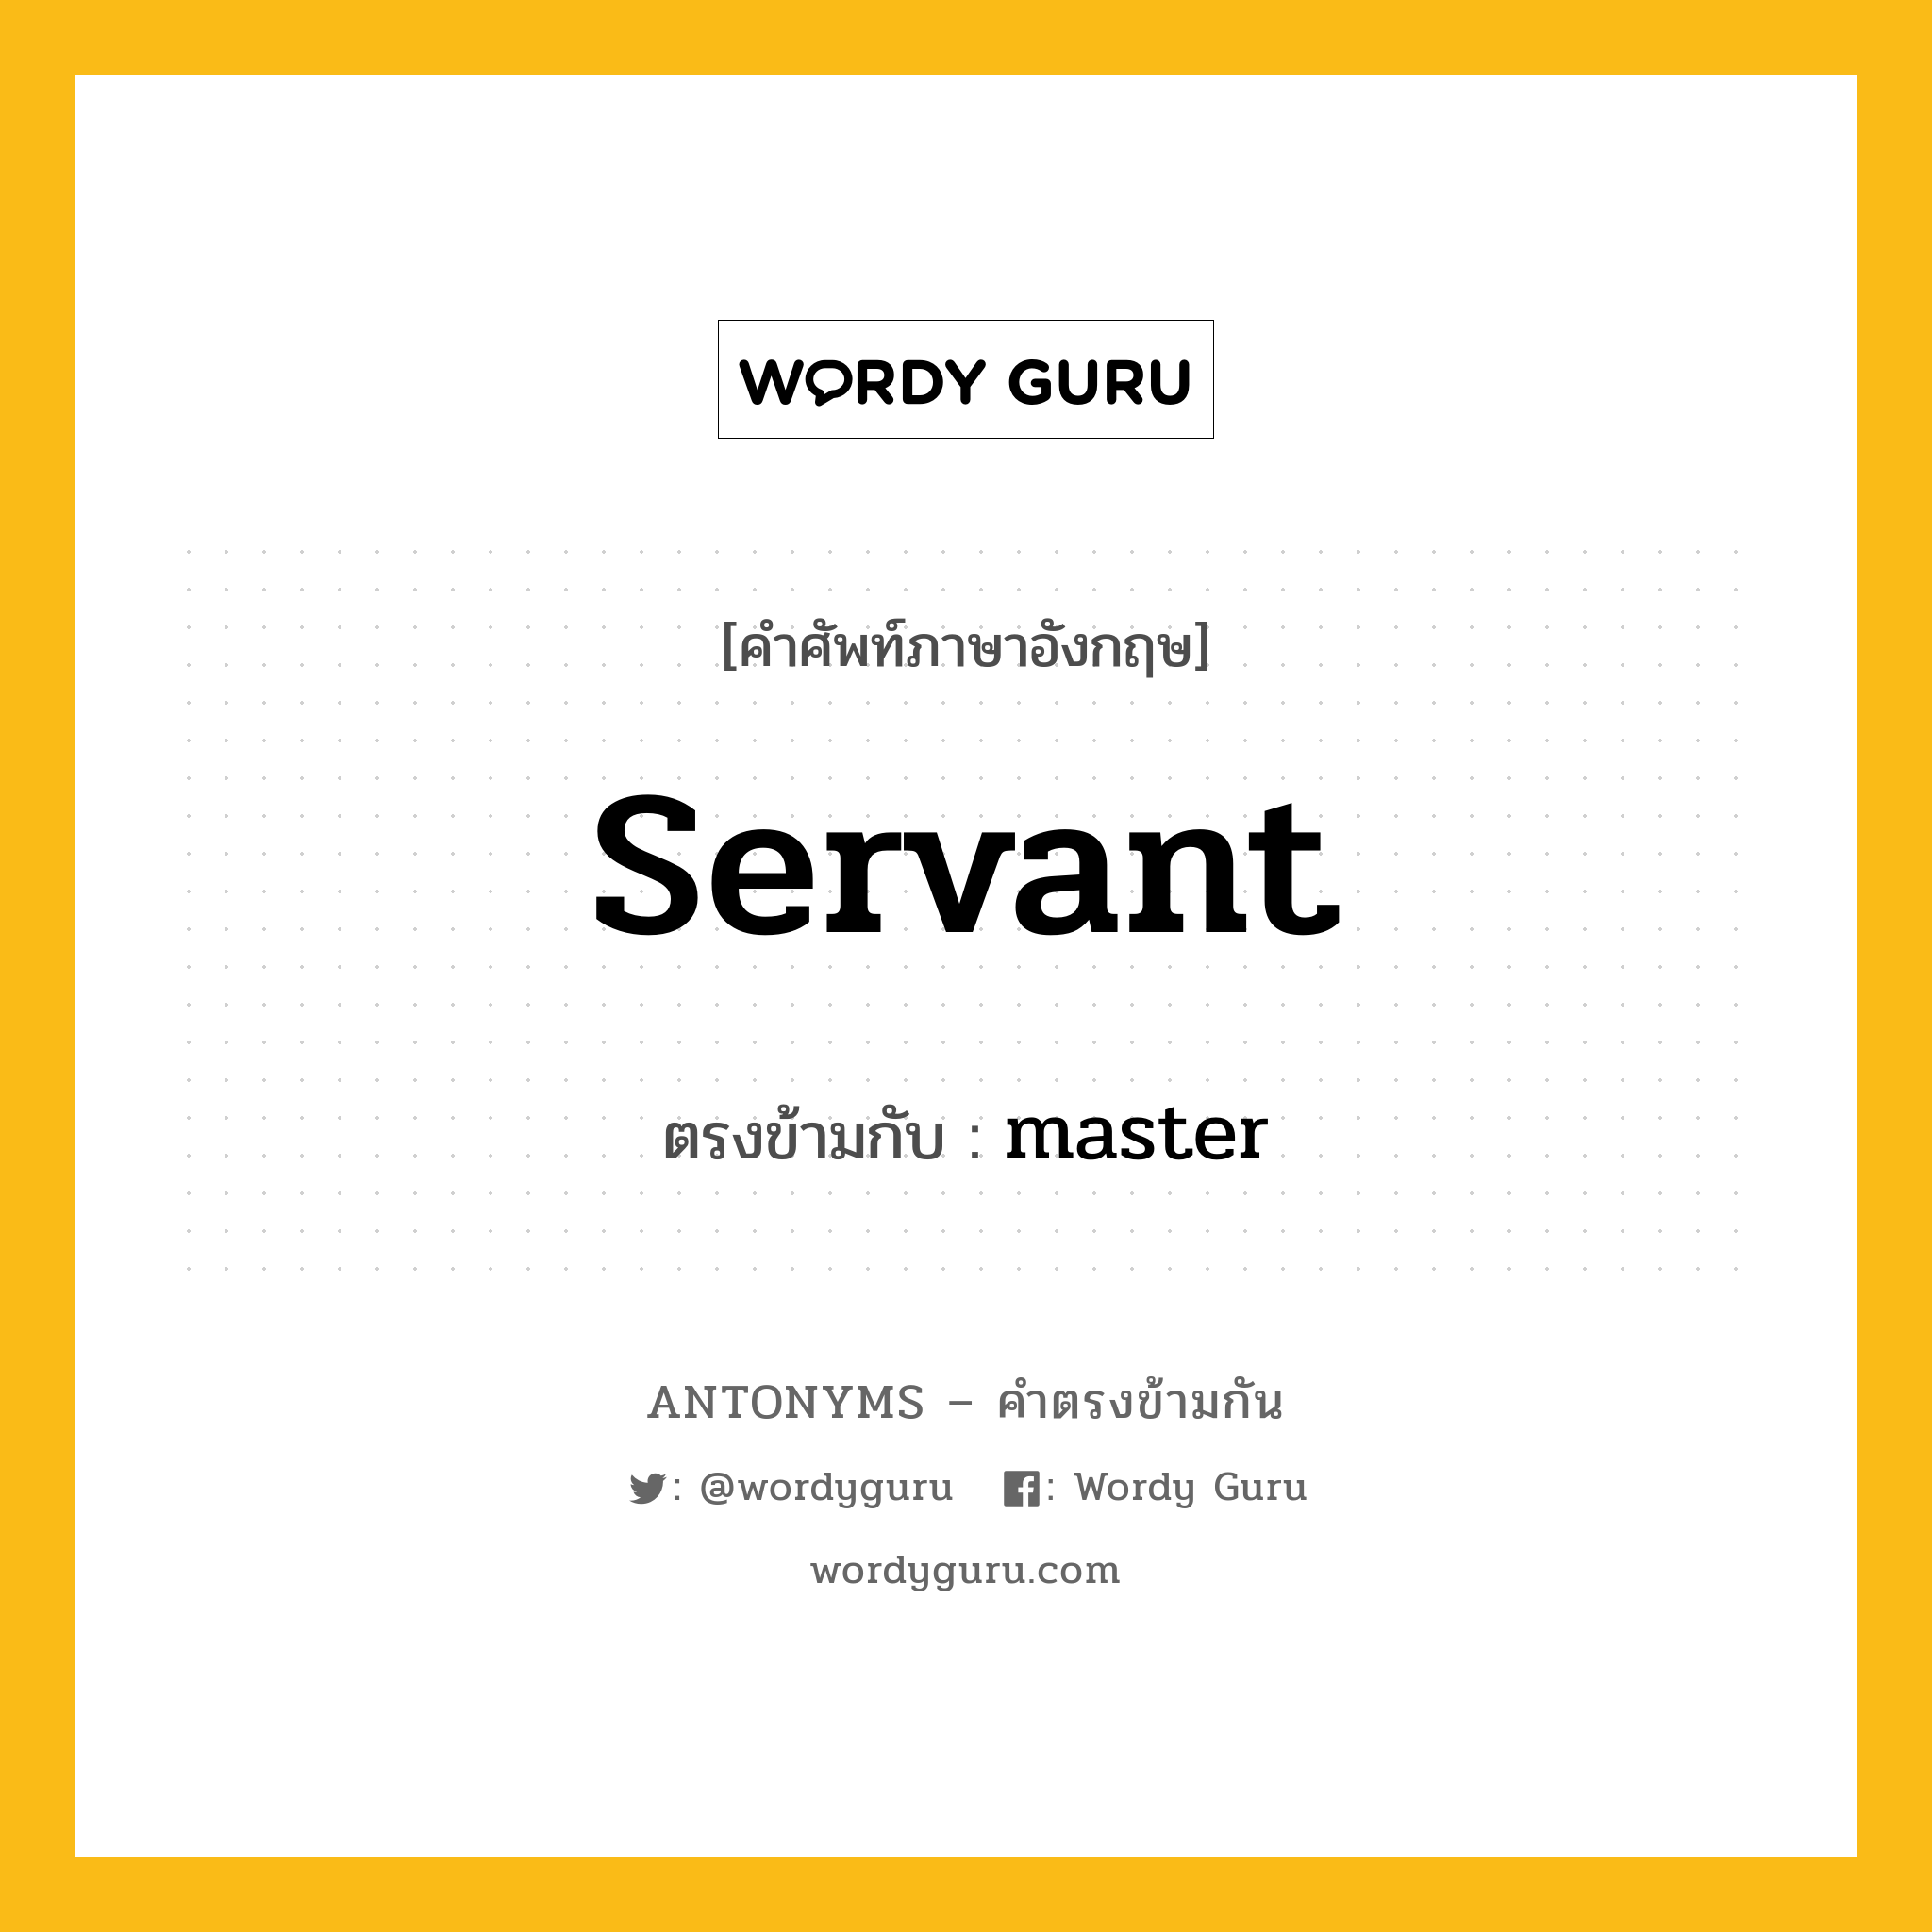 servant เป็นคำตรงข้ามกับคำไหนบ้าง?, คำศัพท์ภาษาอังกฤษ servant ตรงข้ามกับ master หมวด master